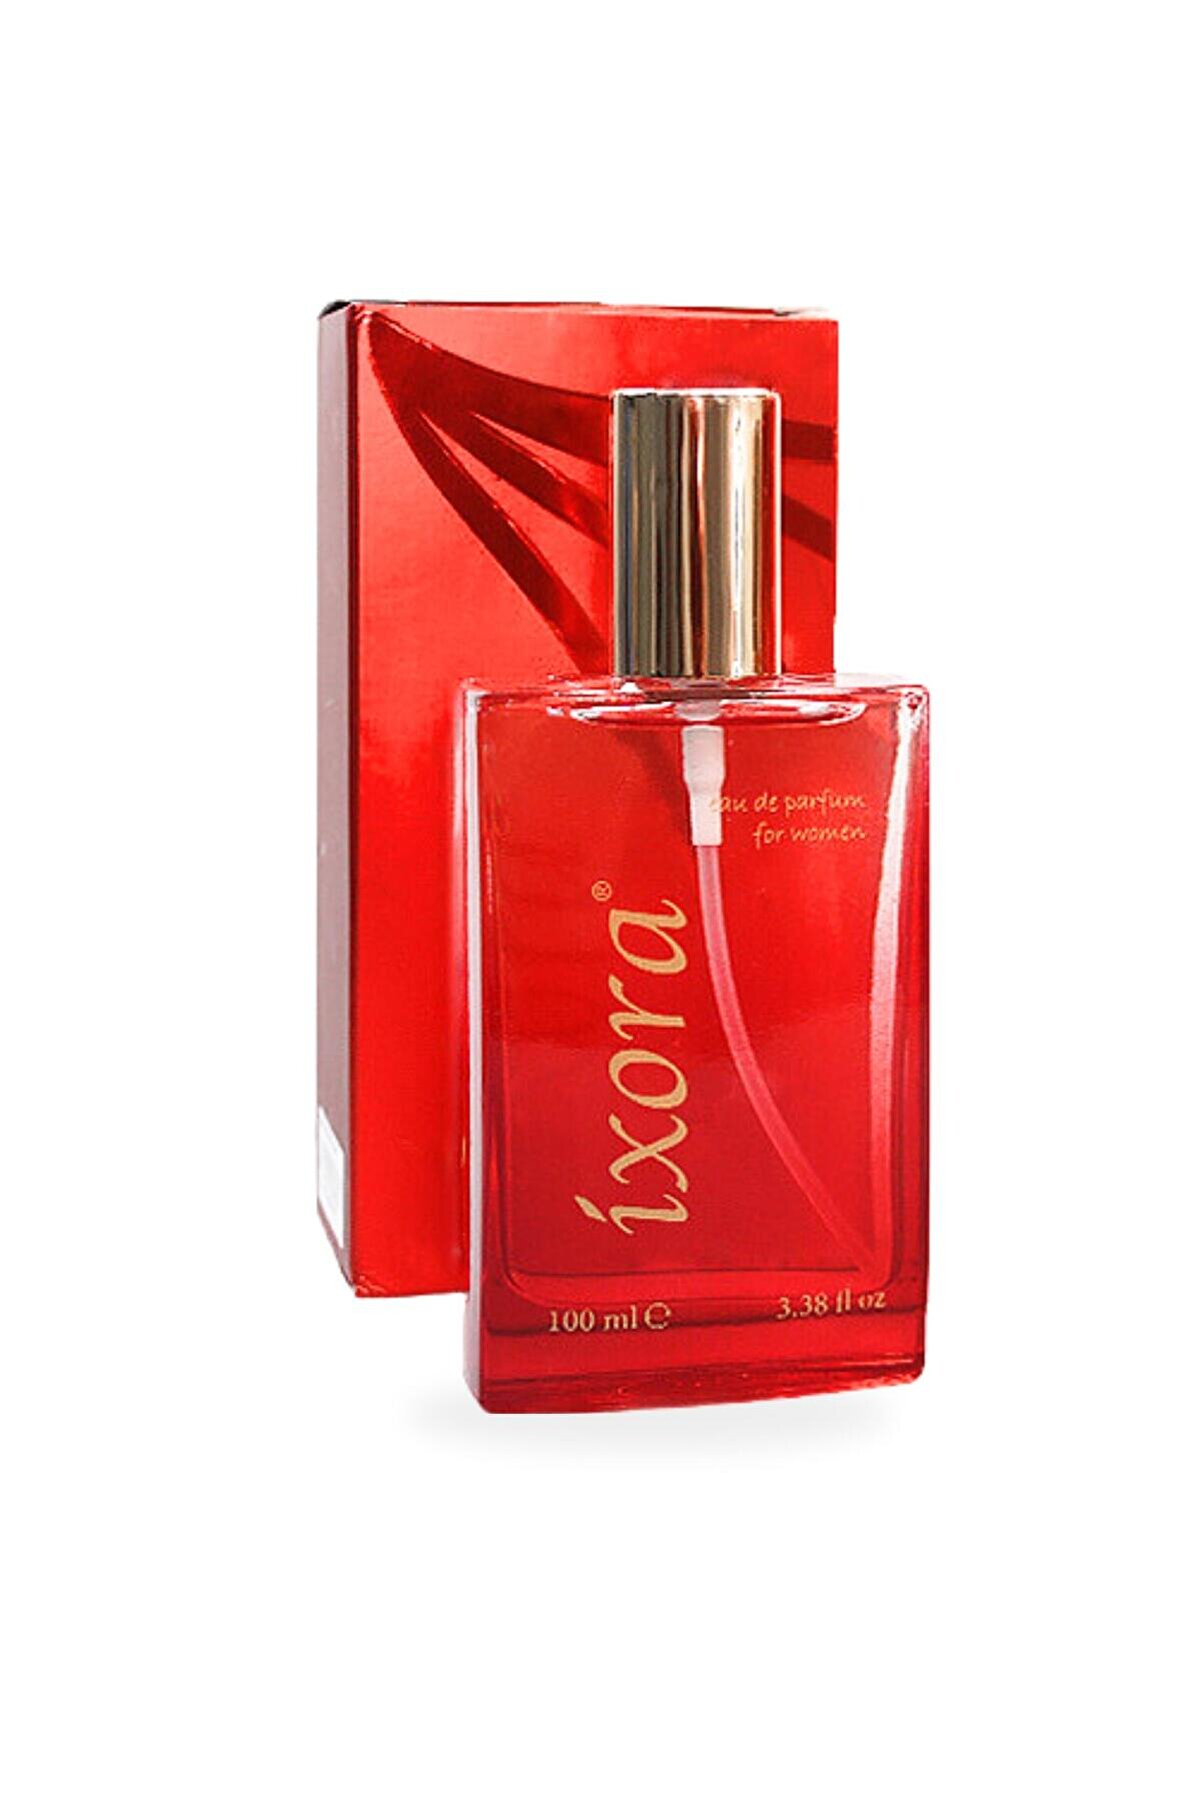 Ixora B220 Queen Kadın Parfüm 100 ml Edp